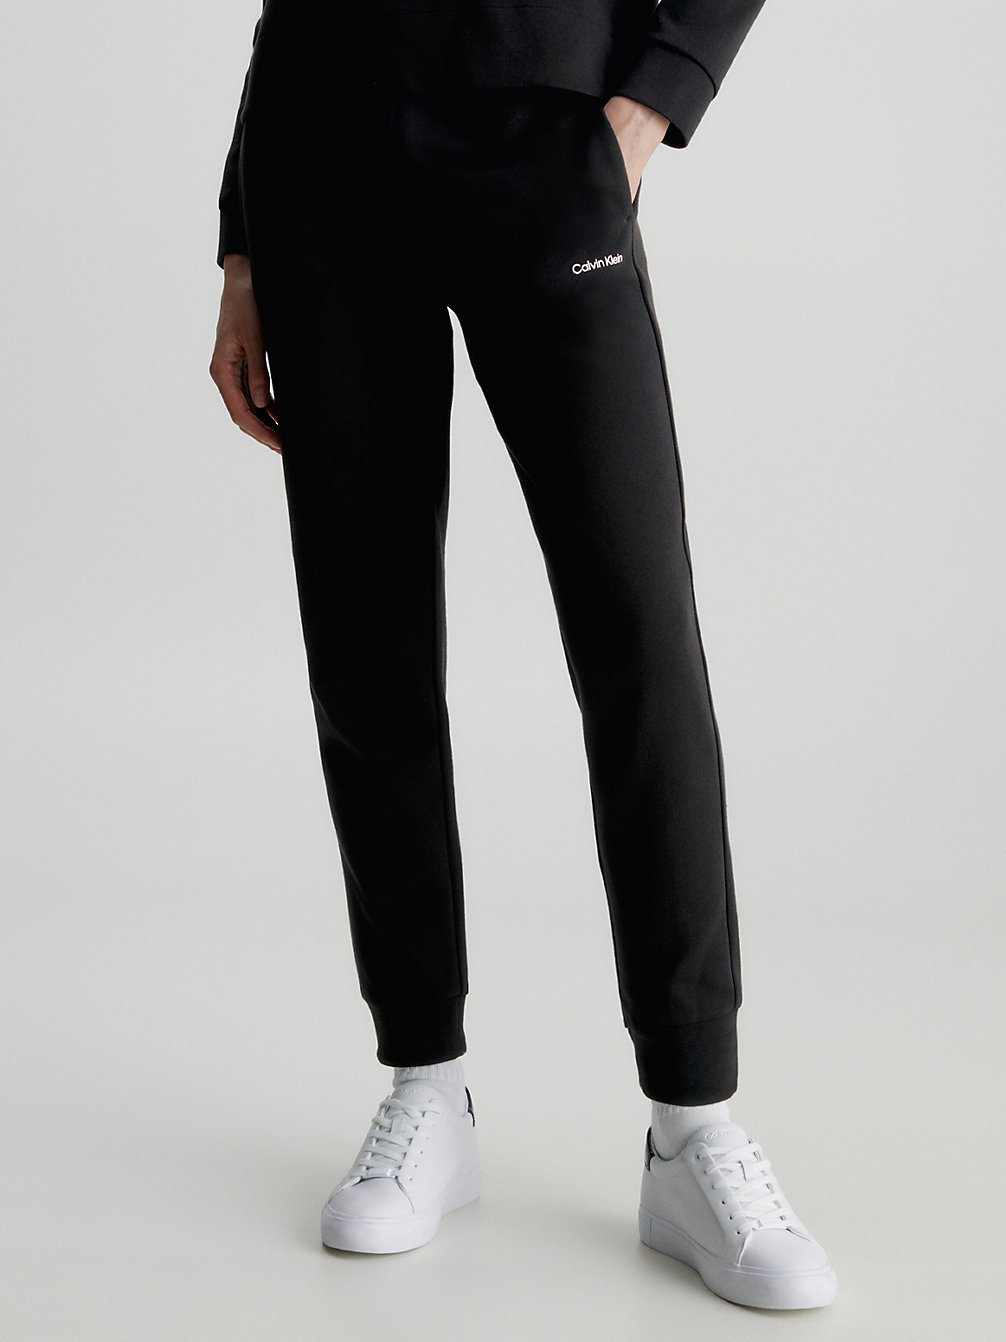 CK BLACK > Wąskie Spodnie Dresowe Z Przetworzonego Poliestru > undefined Kobiety - Calvin Klein